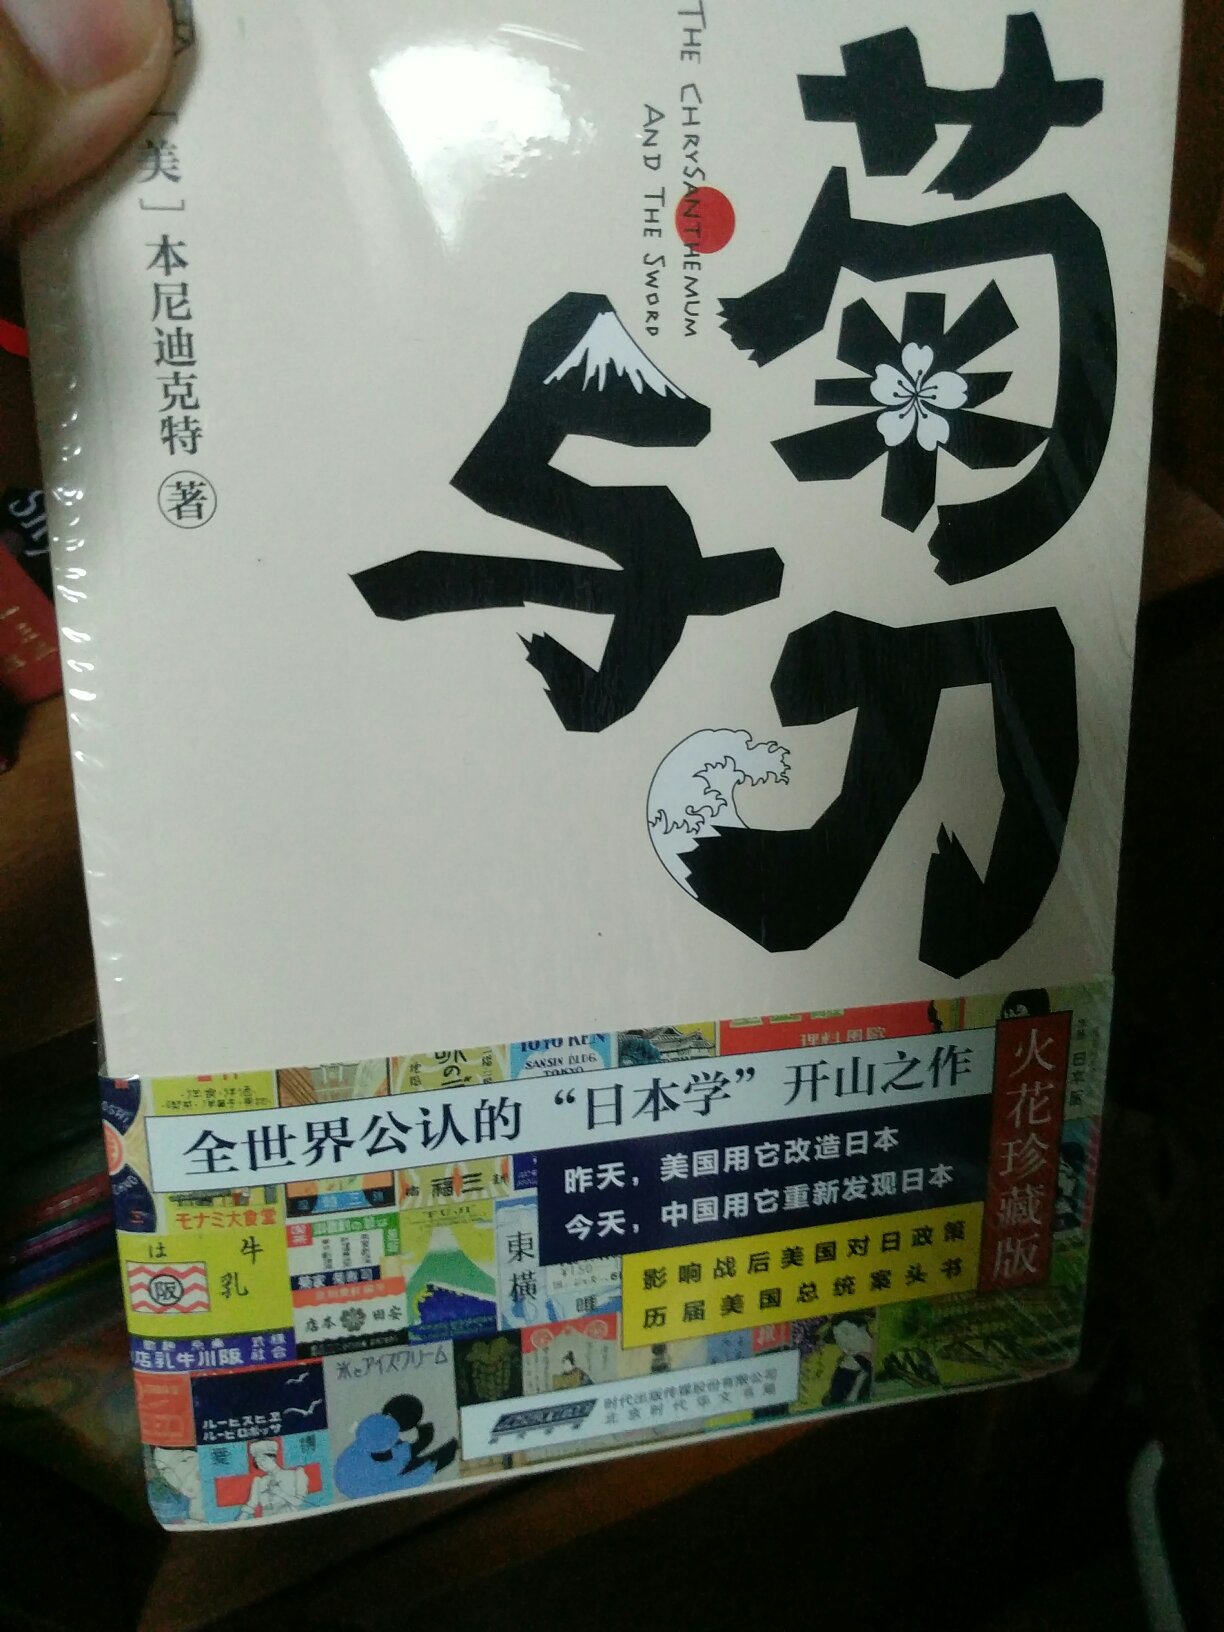 这个原版系列书在国内翻译版本太多 题材虽然老套 但是经典 学习需要搞得生动